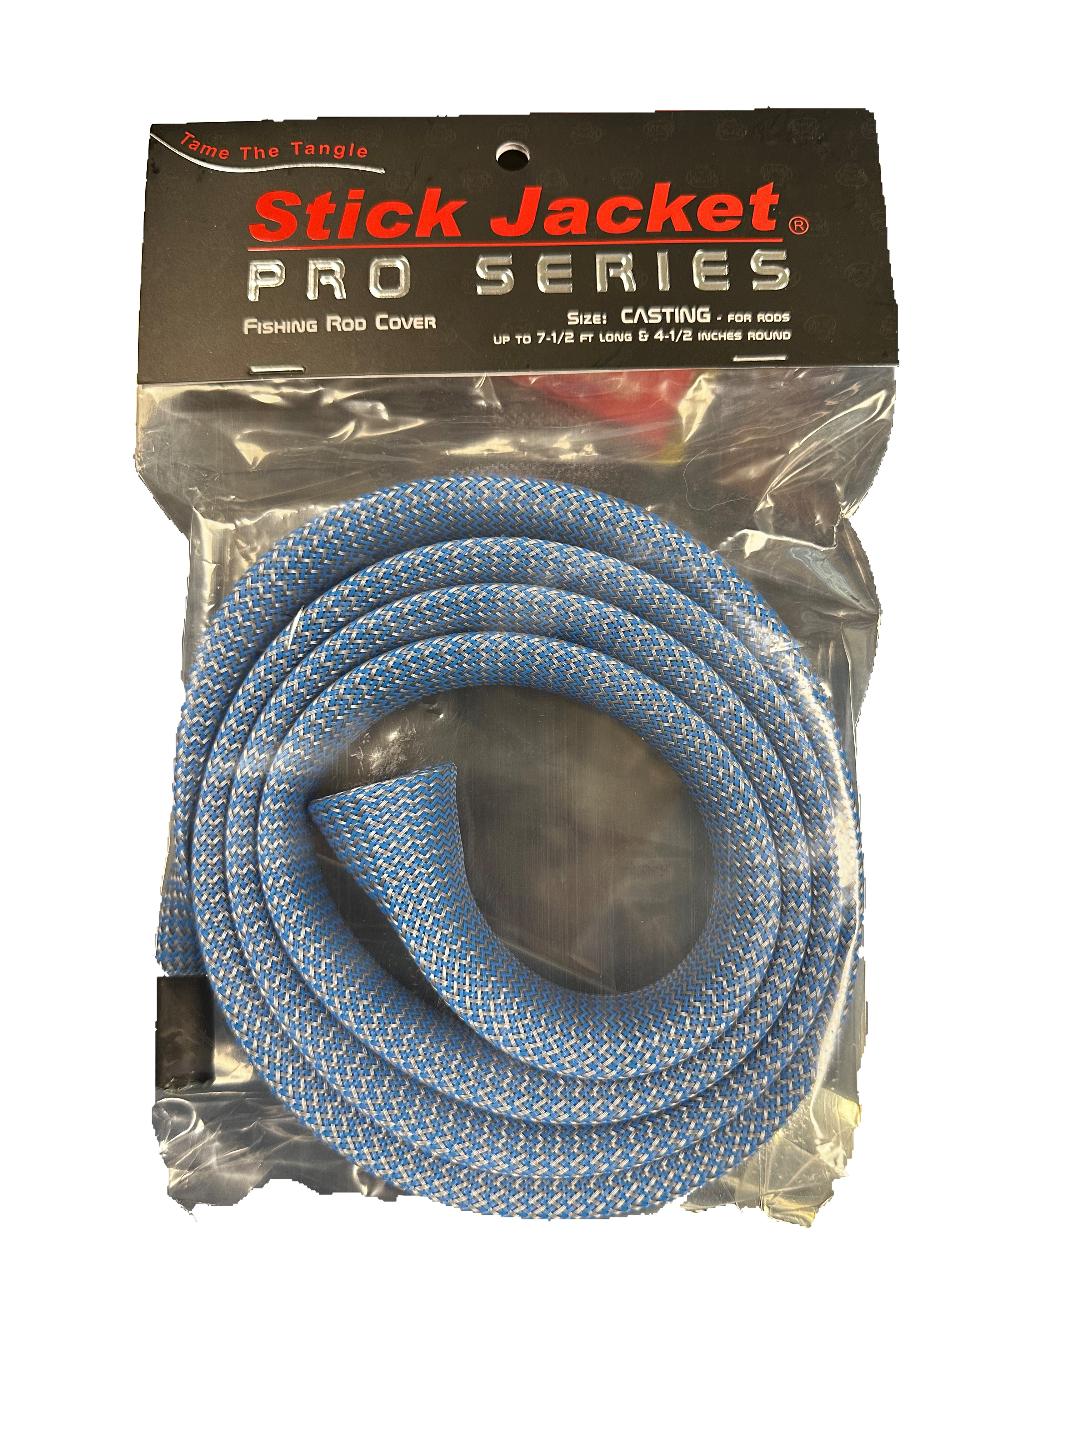 Giacca a bastone, Stick Jacket Rod Cover - Serie Pro